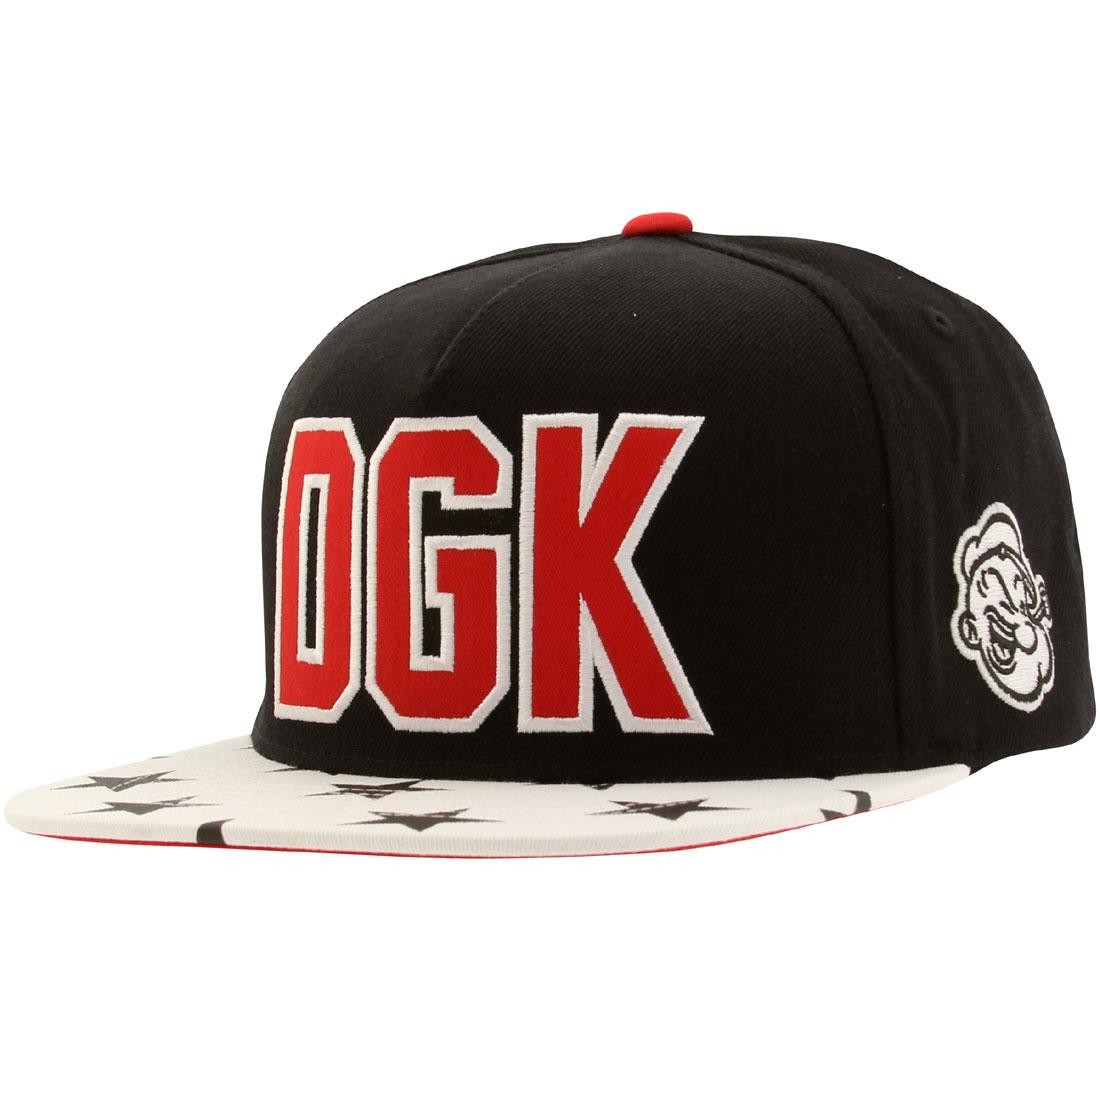 DGK x Popeye Snapback Cap (black)